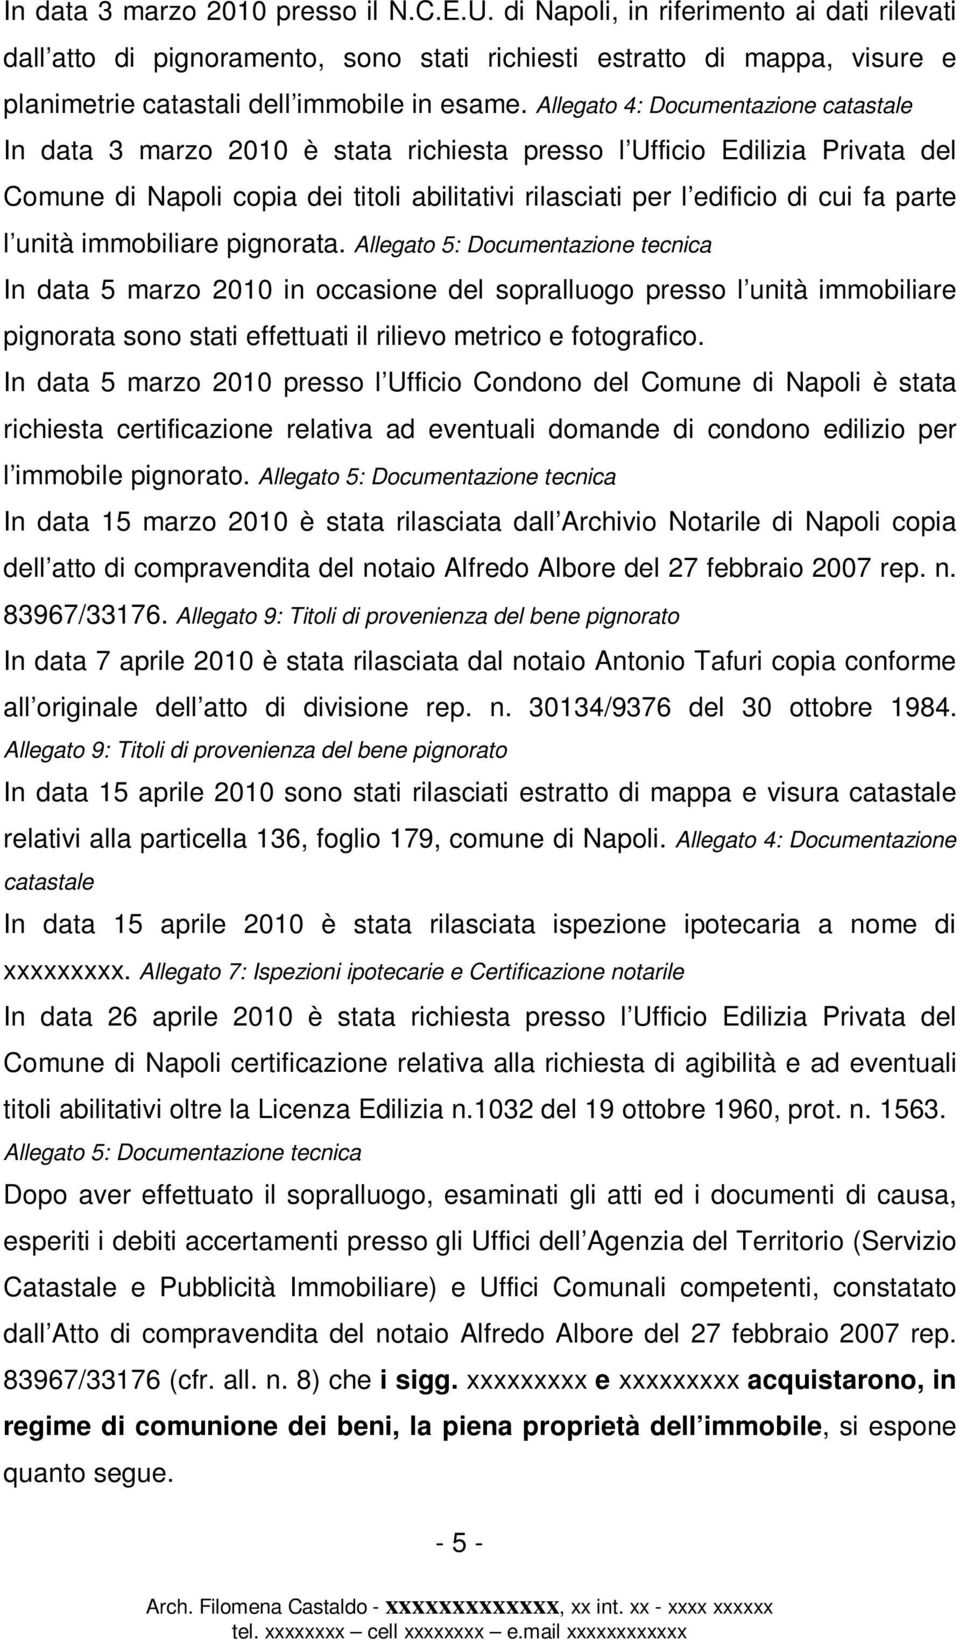 Allegato 4: Documentazione catastale In data 3 marzo 2010 è stata richiesta presso l Ufficio Edilizia Privata del Comune di Napoli copia dei titoli abilitativi rilasciati per l edificio di cui fa